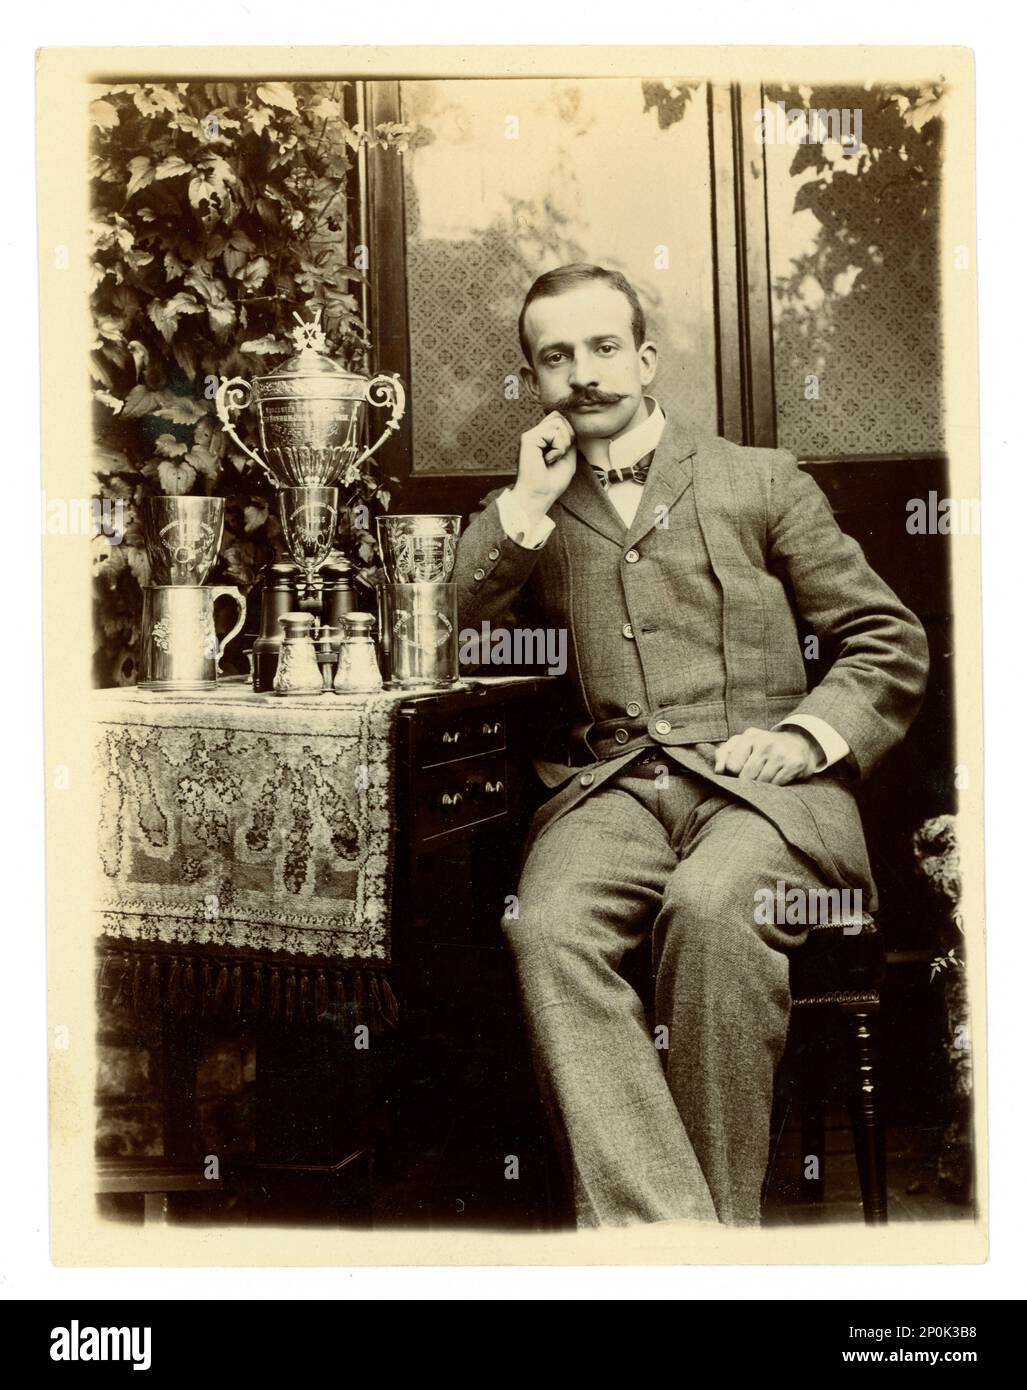 Originale vittoriano fotografia di gand, su un tavolo è esposto un grande vaso sfida Worcester, / trofeo regata per il canottaggio, e altre tazze, possibilmente membro di un coxed quattro equipaggio. Area di Worcester, Regno Unito circa 1897-1899 Foto Stock